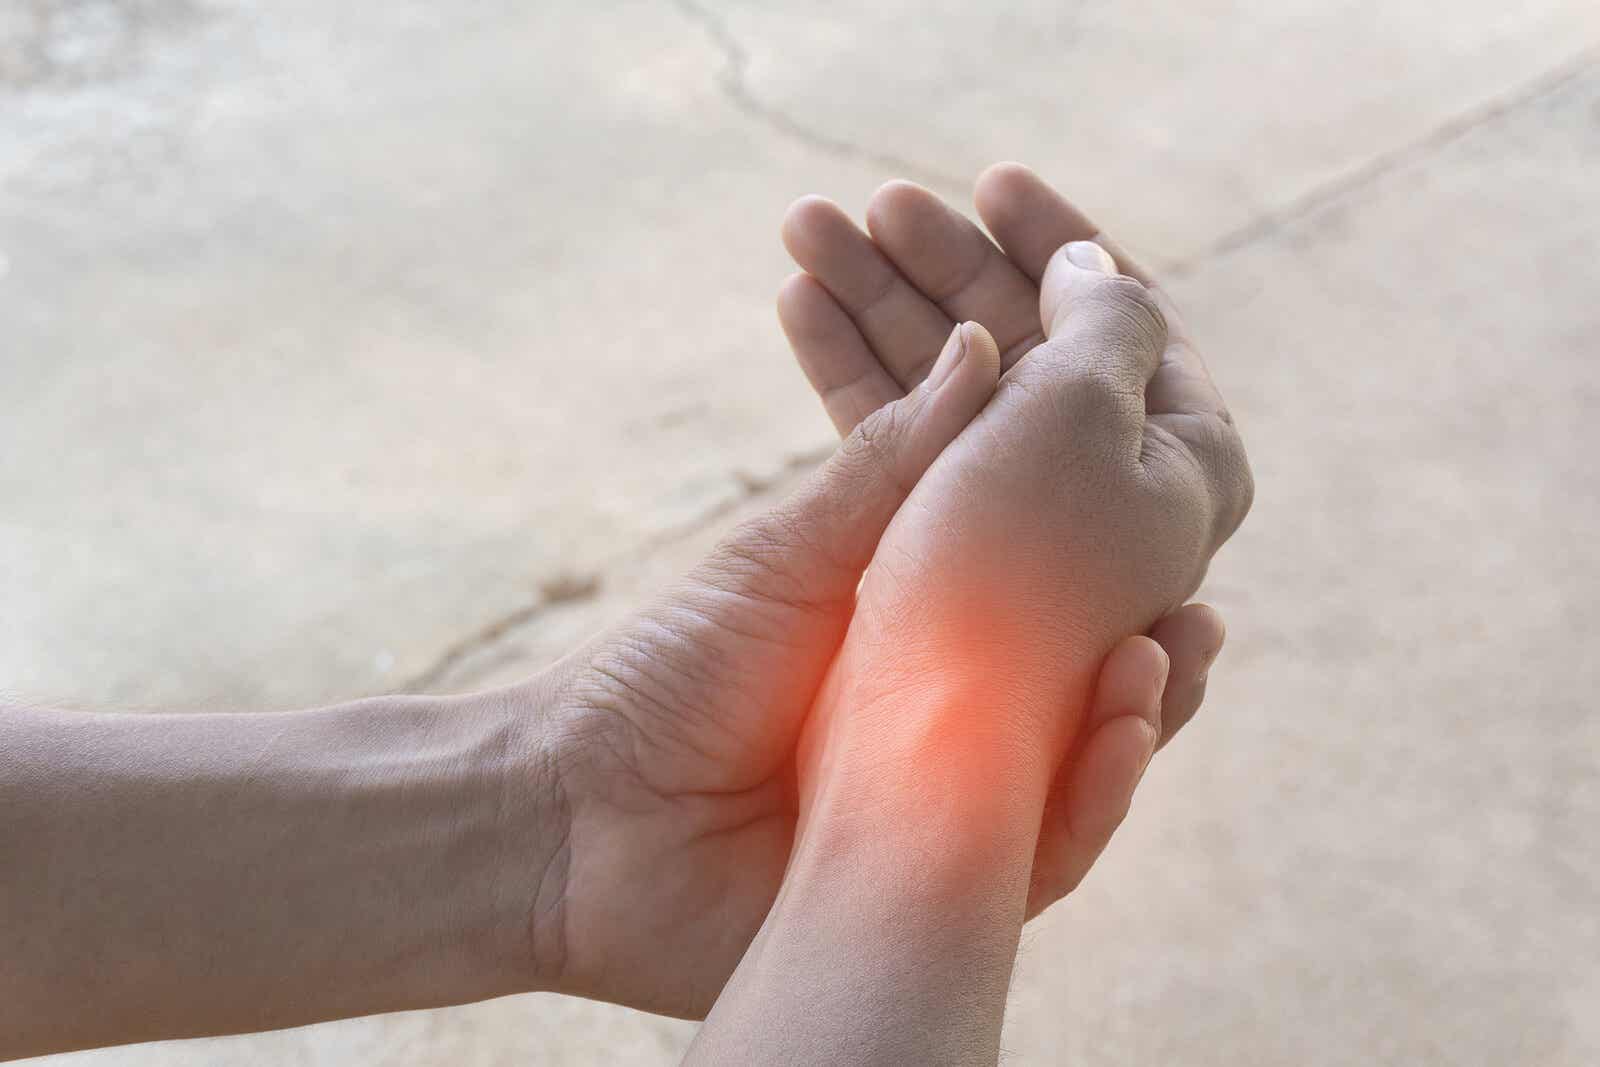 Primeros sntomas de artrosis en las manos